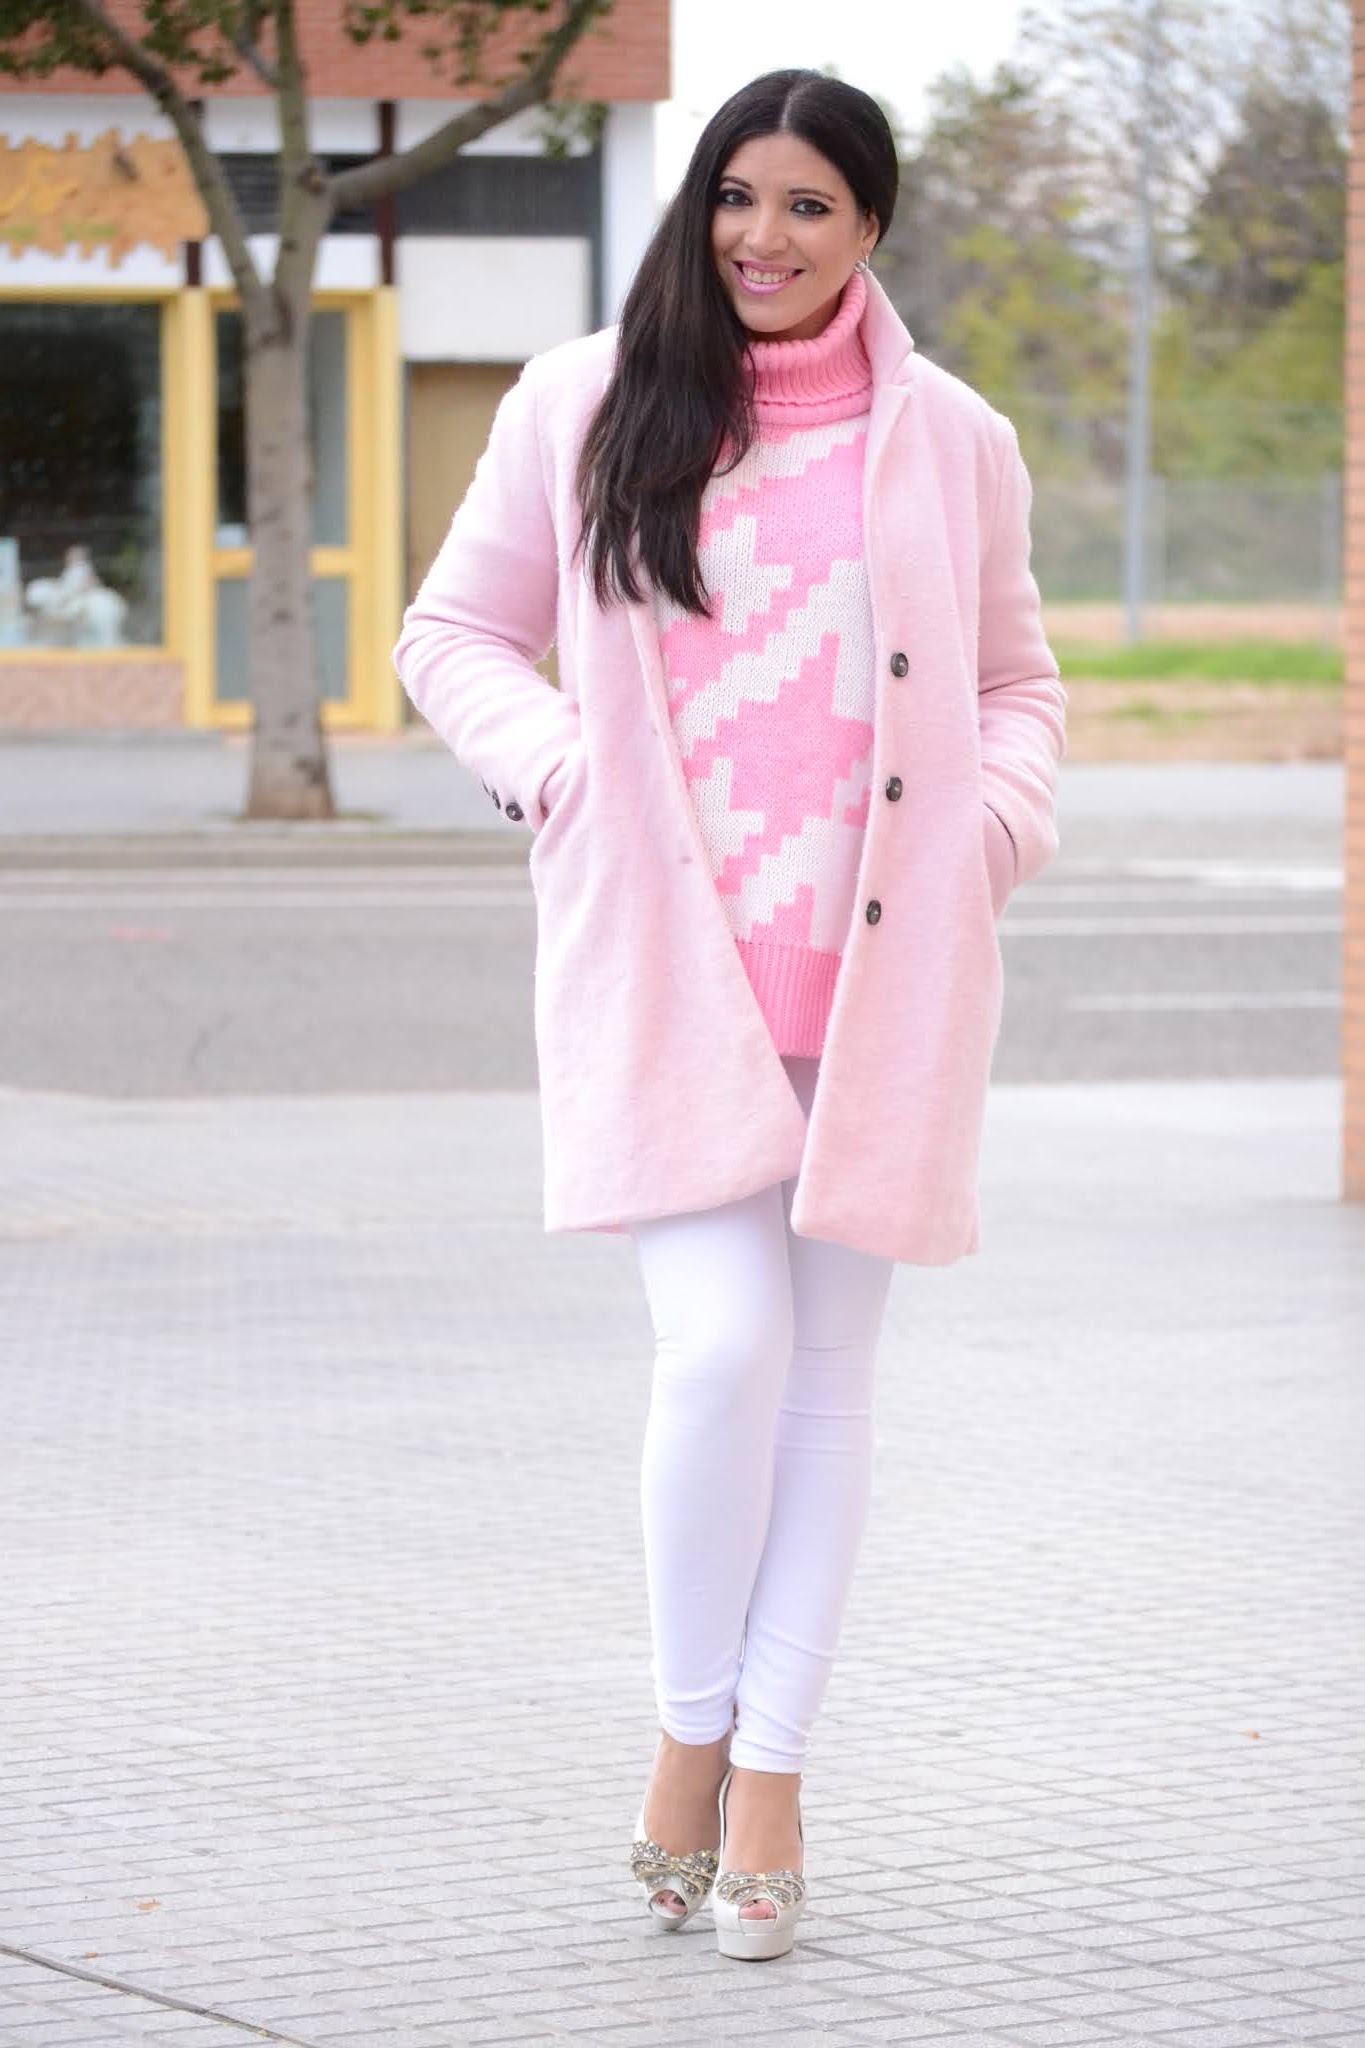 Cómo combinar un jersey rosa y abrigo de pata de gallo, ¡una idea genial!